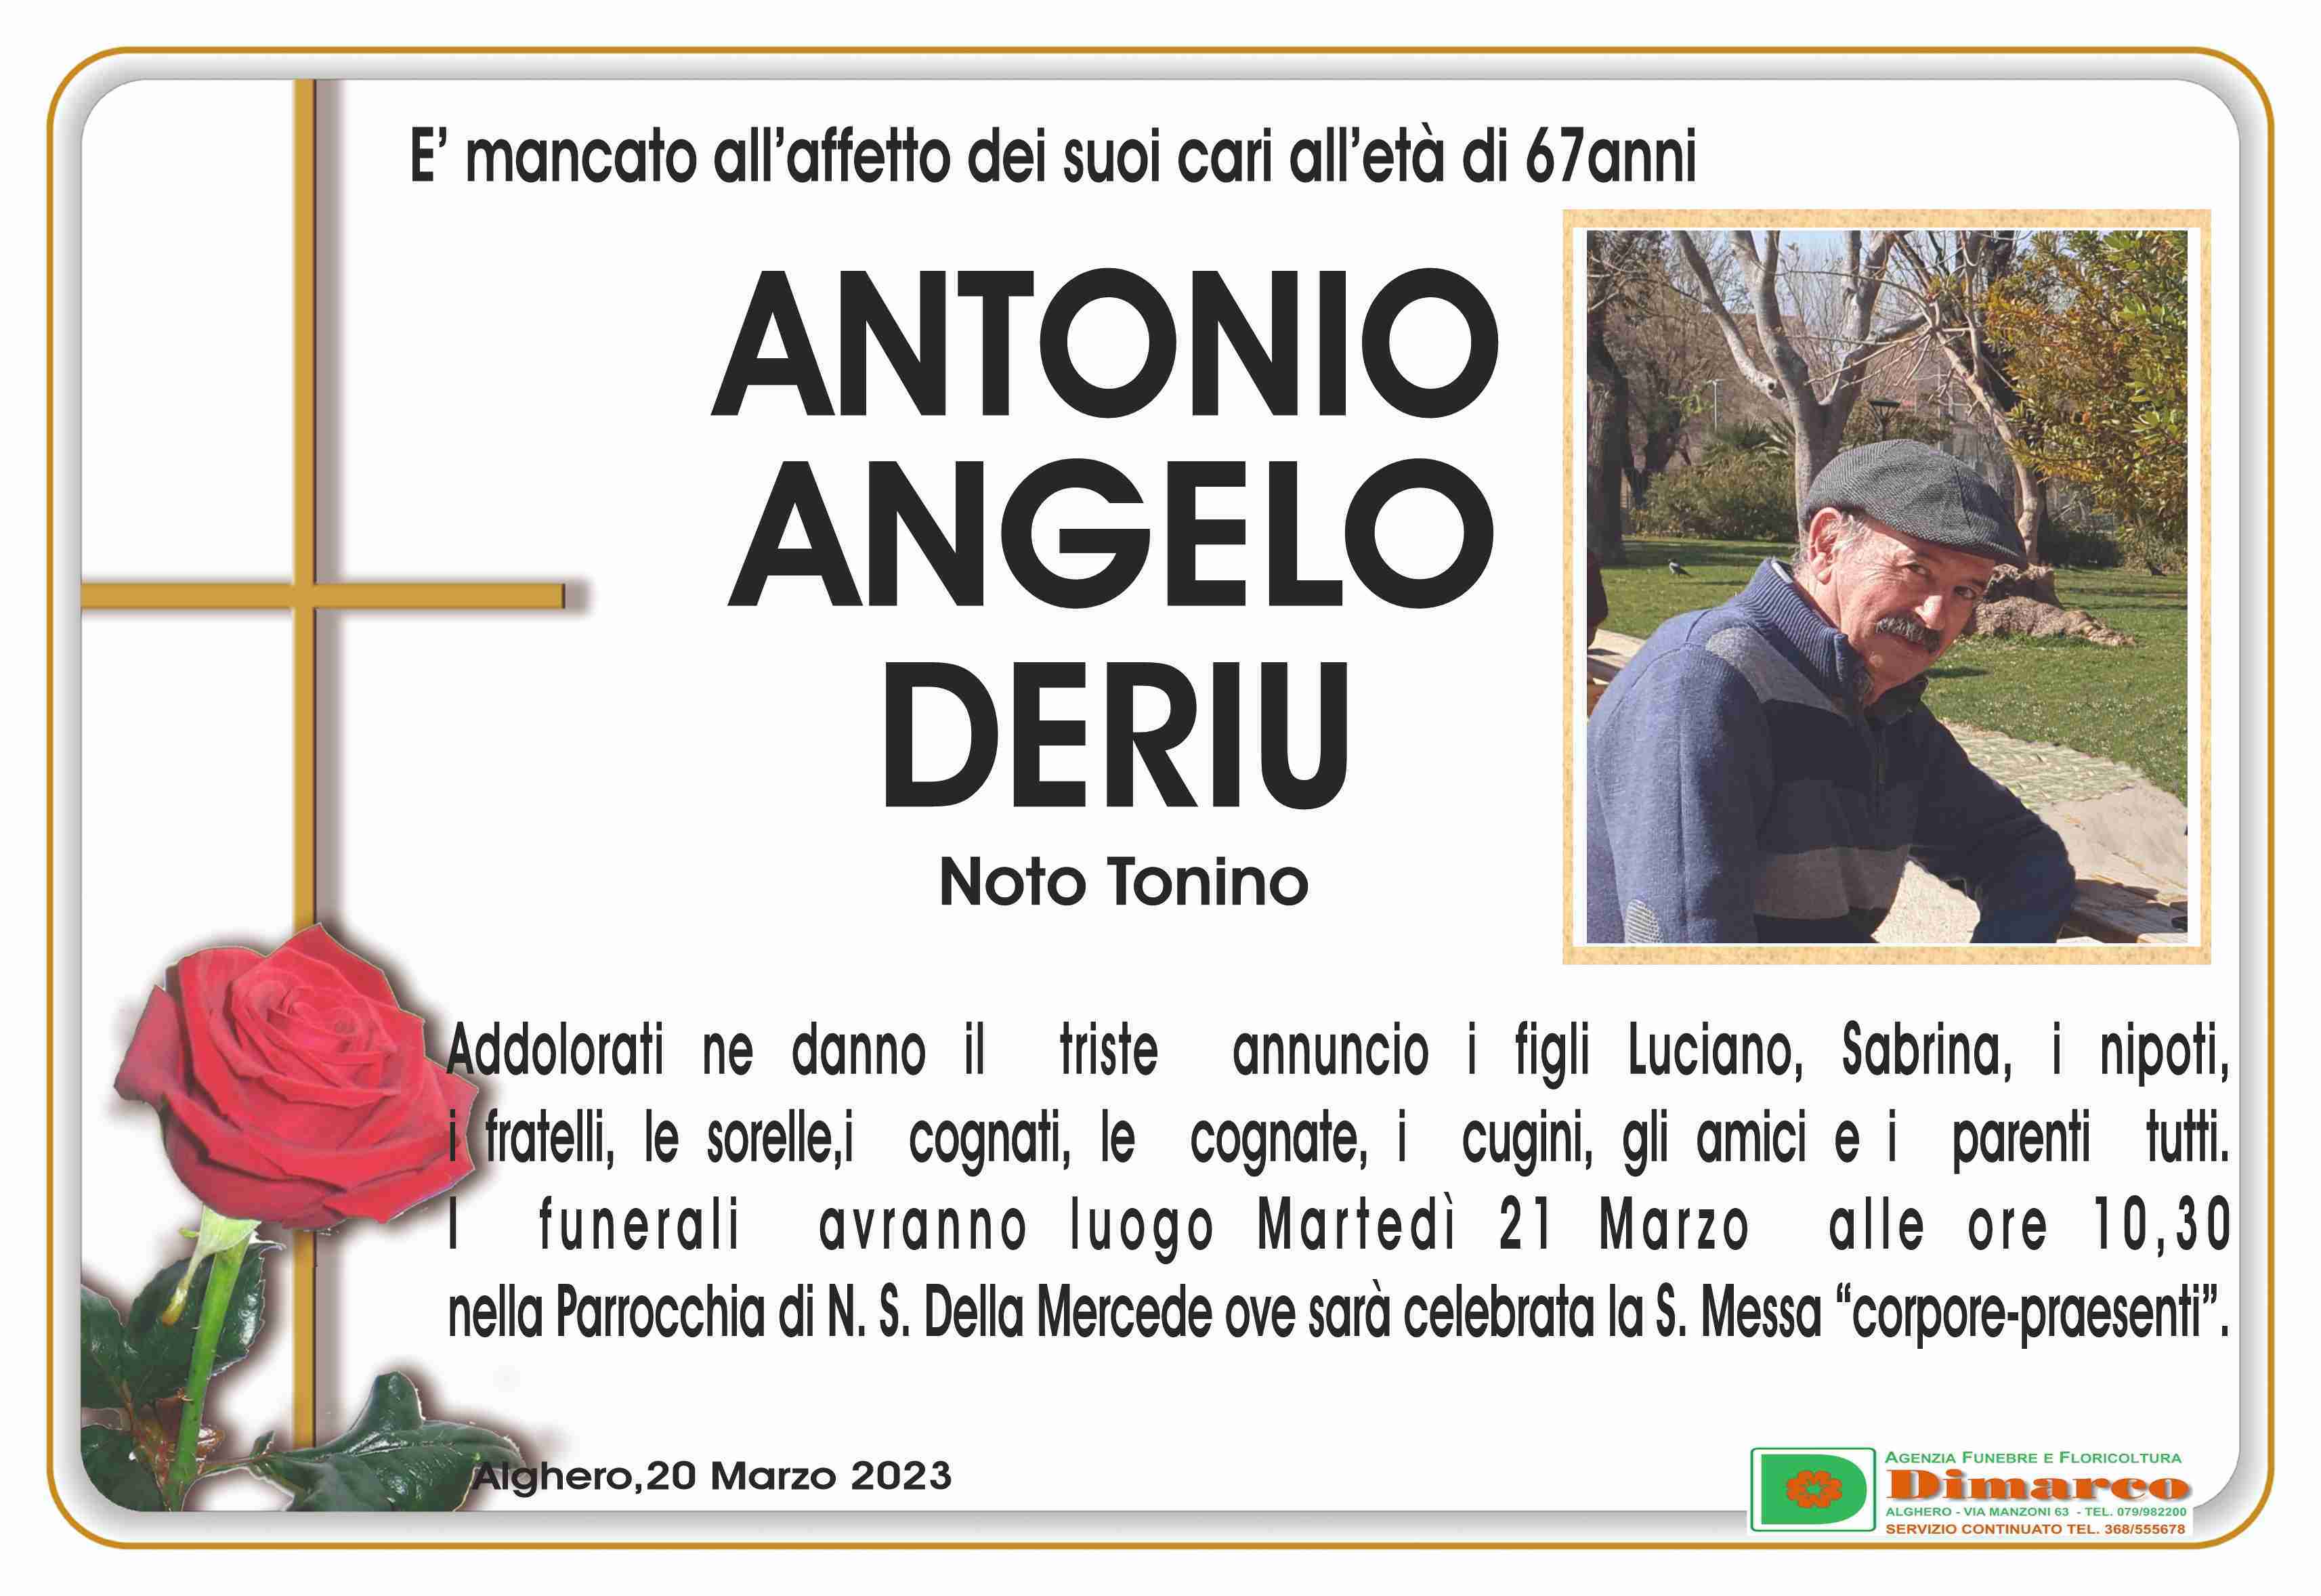 Antonio Angelo Deriu